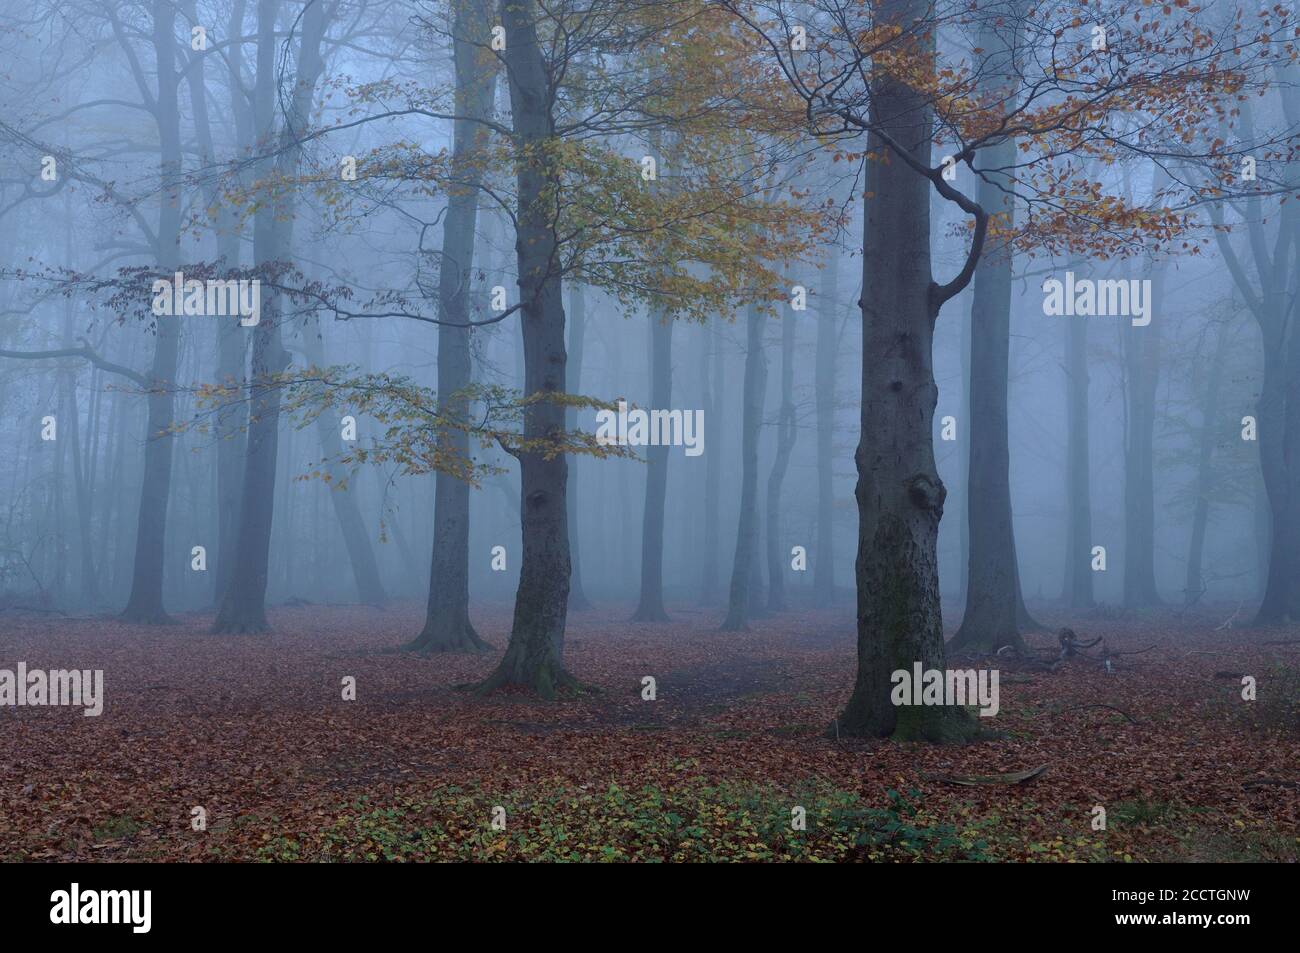 Alter Buchenwald in Herbststimmung, Verfärbung der Blätter, Blattfall, dichter Nebel zur blauen Stunde, typischer novembertag, Europa. Stockfoto